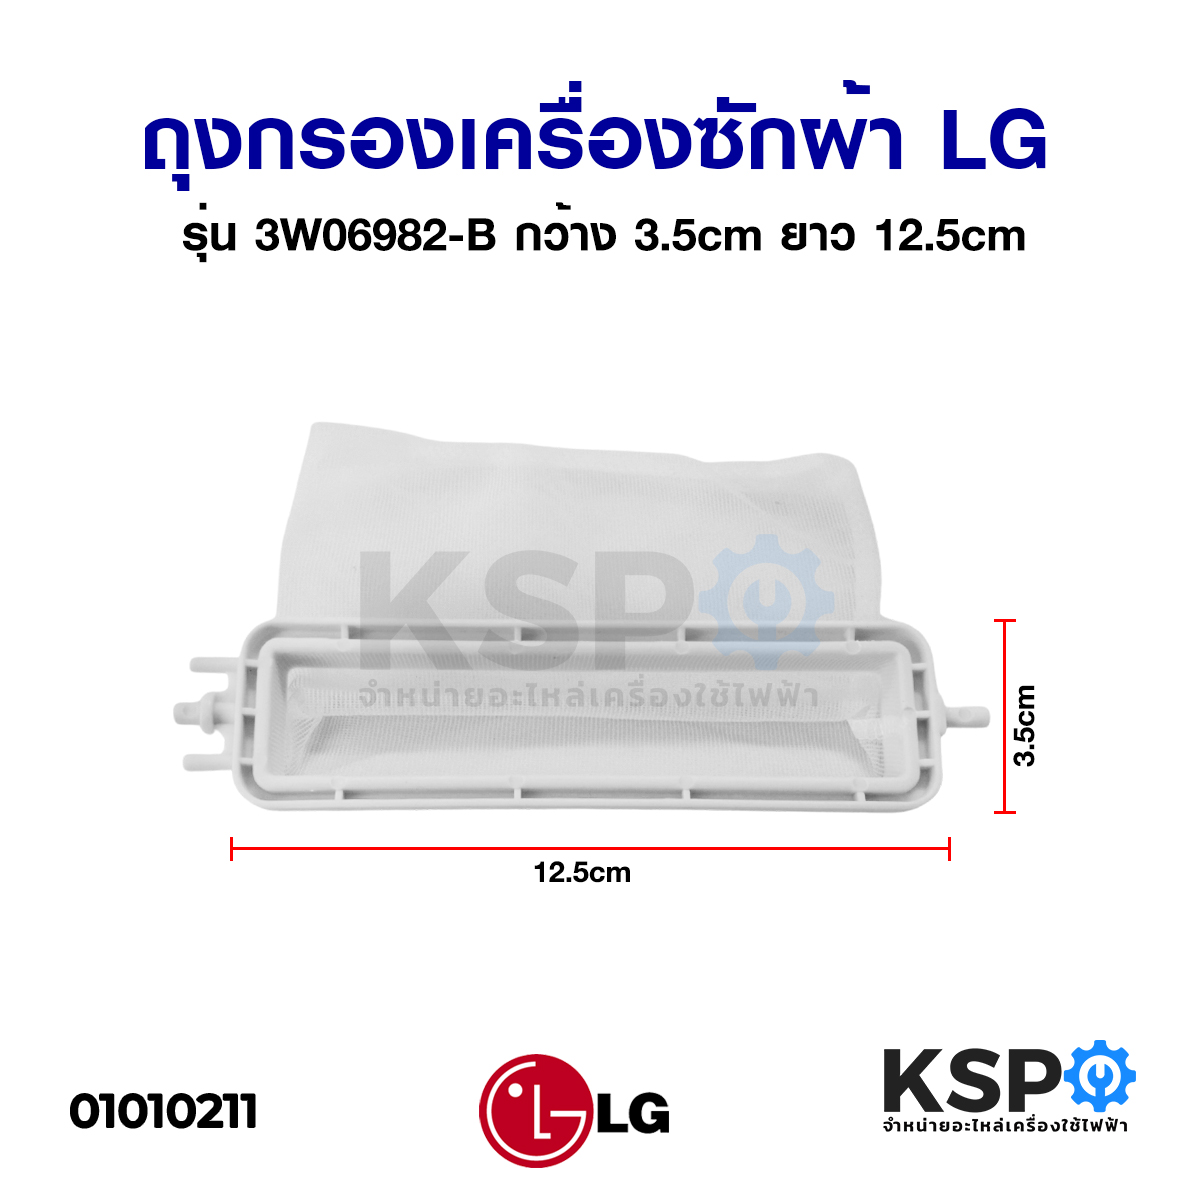 รูปภาพรายละเอียดของ ถุงกรองเครื่องซักผ้า LG รุ่น 2ถัง ฝาบน ขนาด 12.5cm (ยาวทั้งหมด 14.5cm) x 3.5cm (แท้) อะไหล่เครื่องซักผ้า